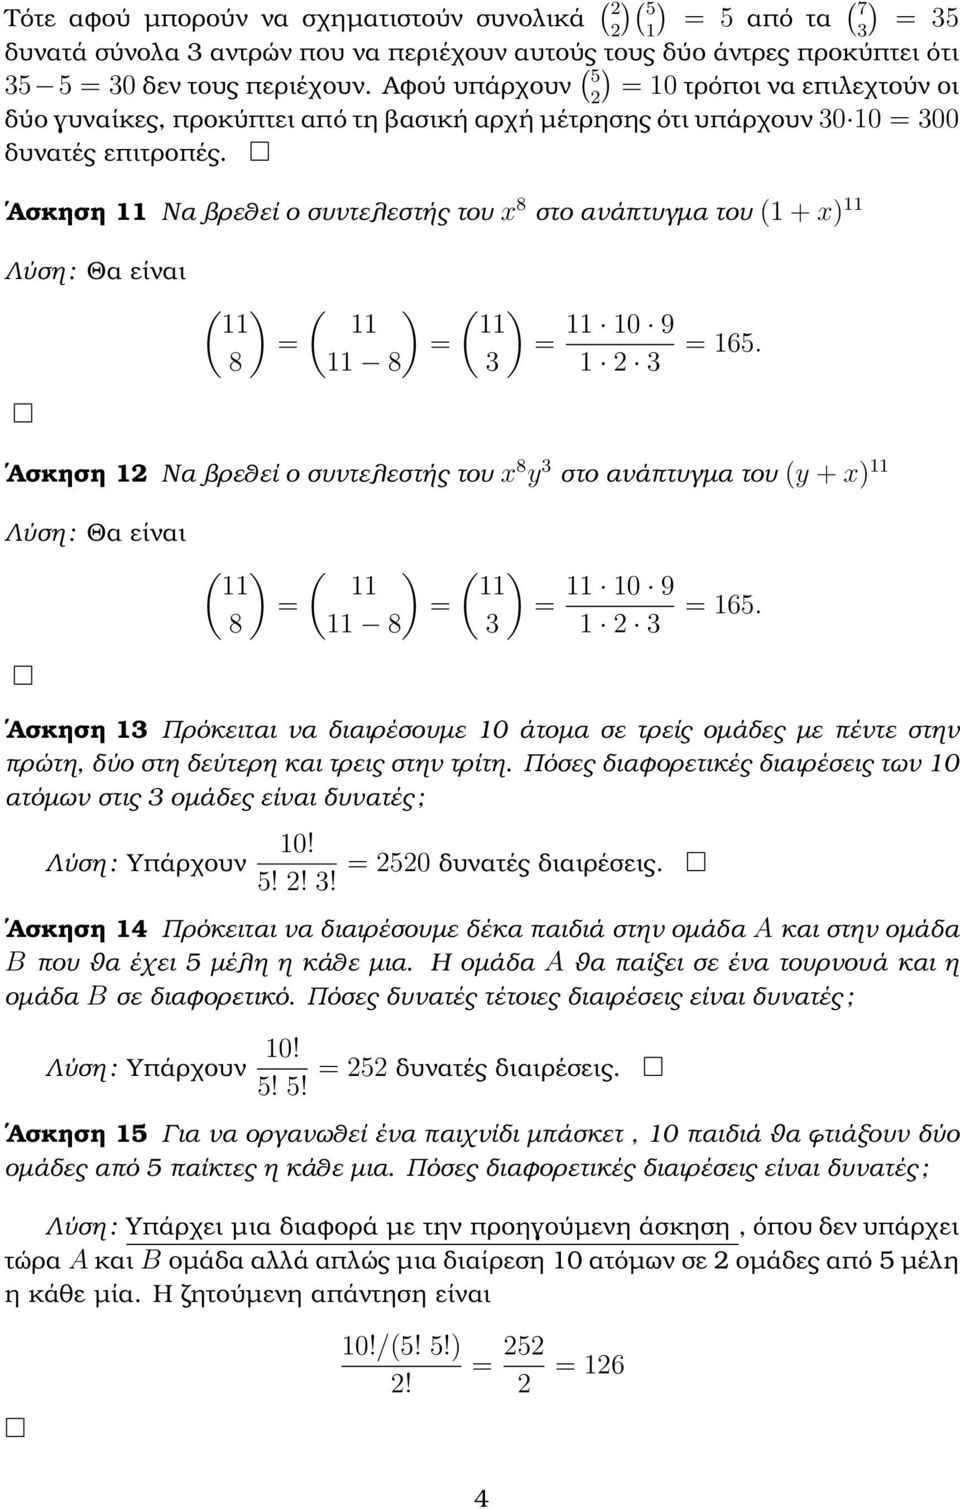 Ασκηση 11 Να ϐρεθεί ο συντελεστής του x 8 στο ανάπτυγµα του (1 + x) 11 Λύση : Θα είναι ( ) ( ) 11 11 8 11 8 ( ) 11 11 10 9 1 2 165.